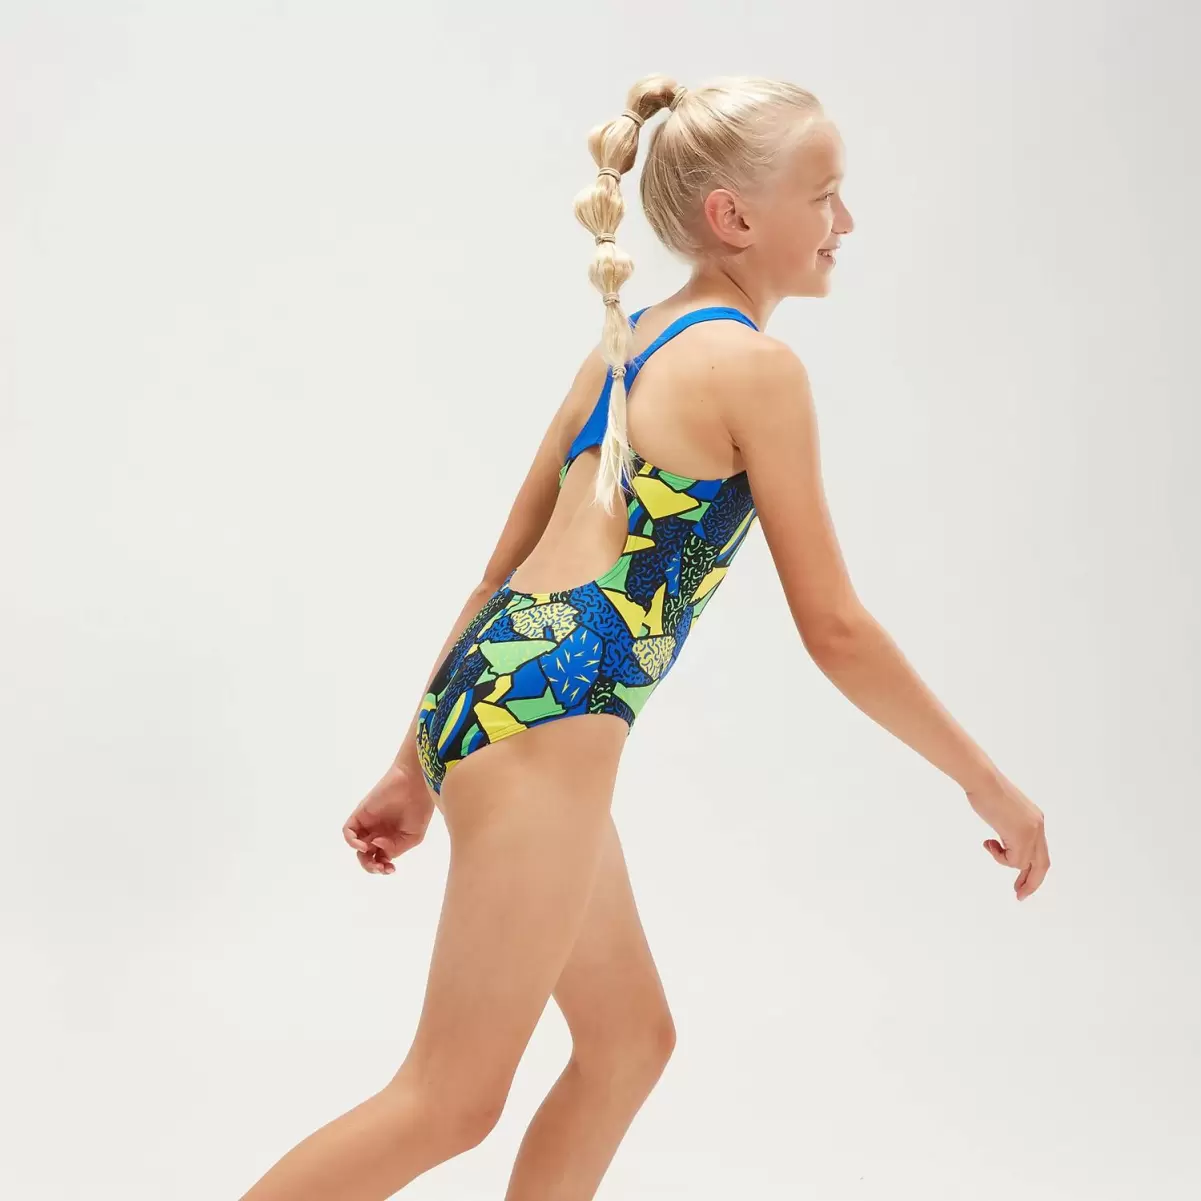 Mädchen Bademode Splashback Badeanzug Für Mädchen Schwarz/Blau Kinder Speedo